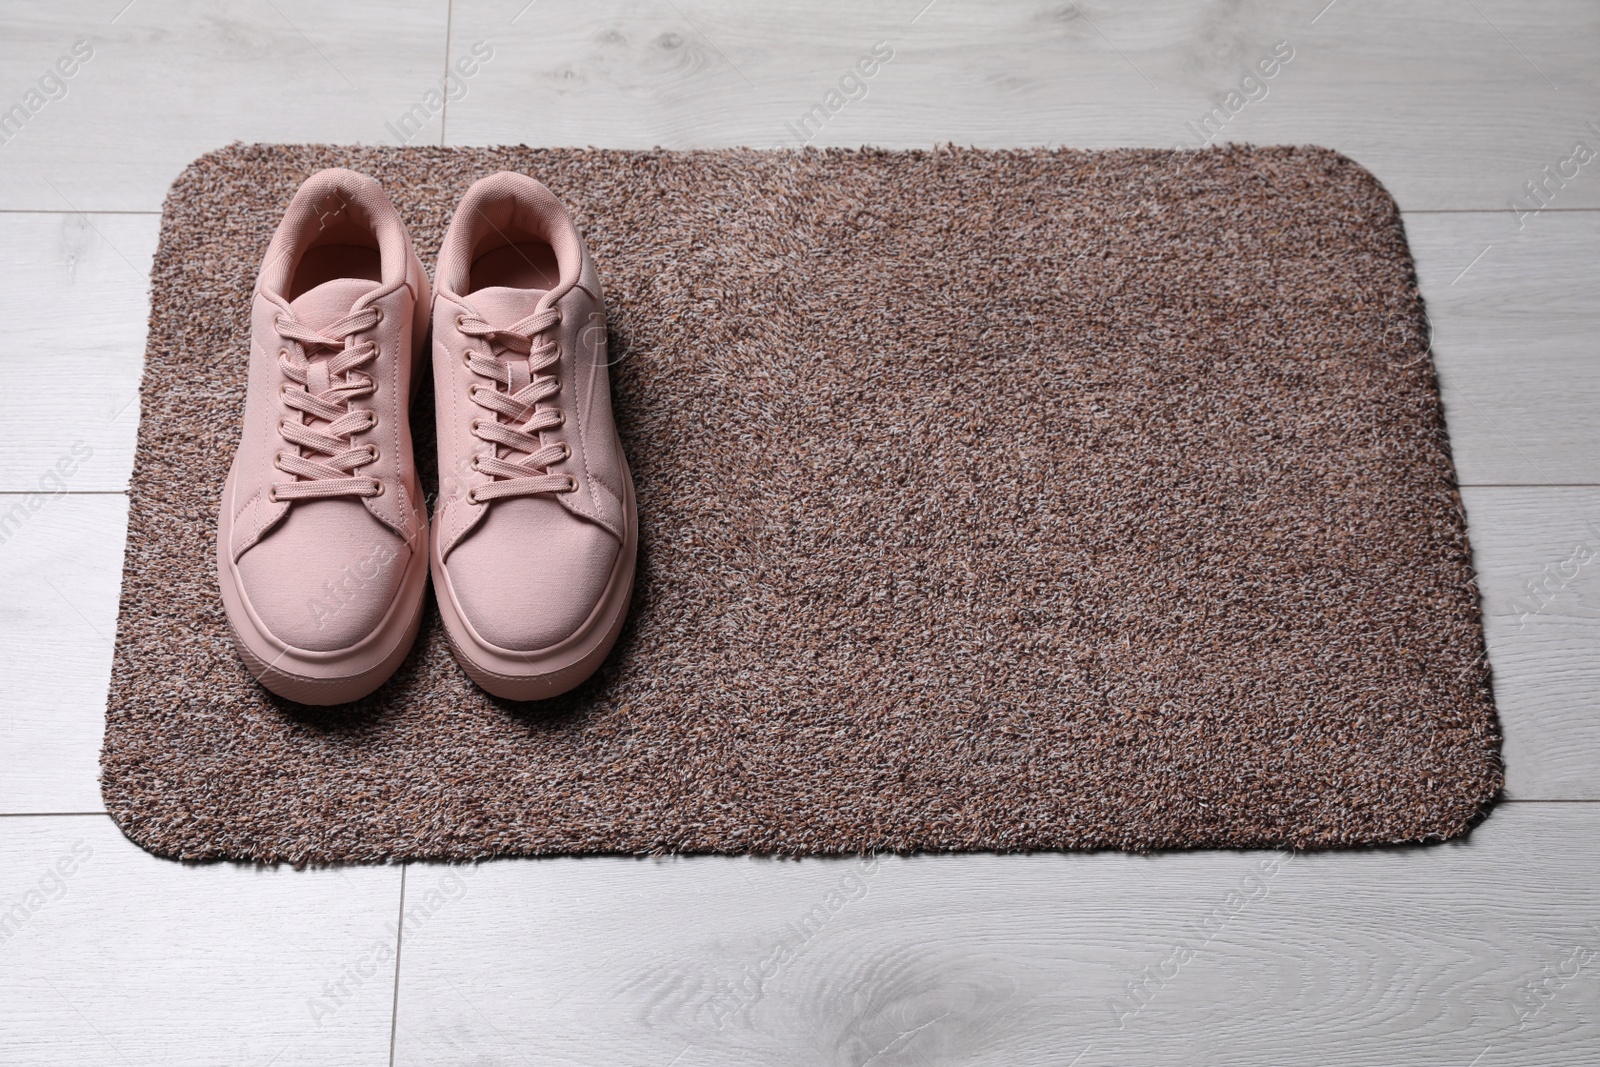 Photo of New clean door mat with shoes on floor